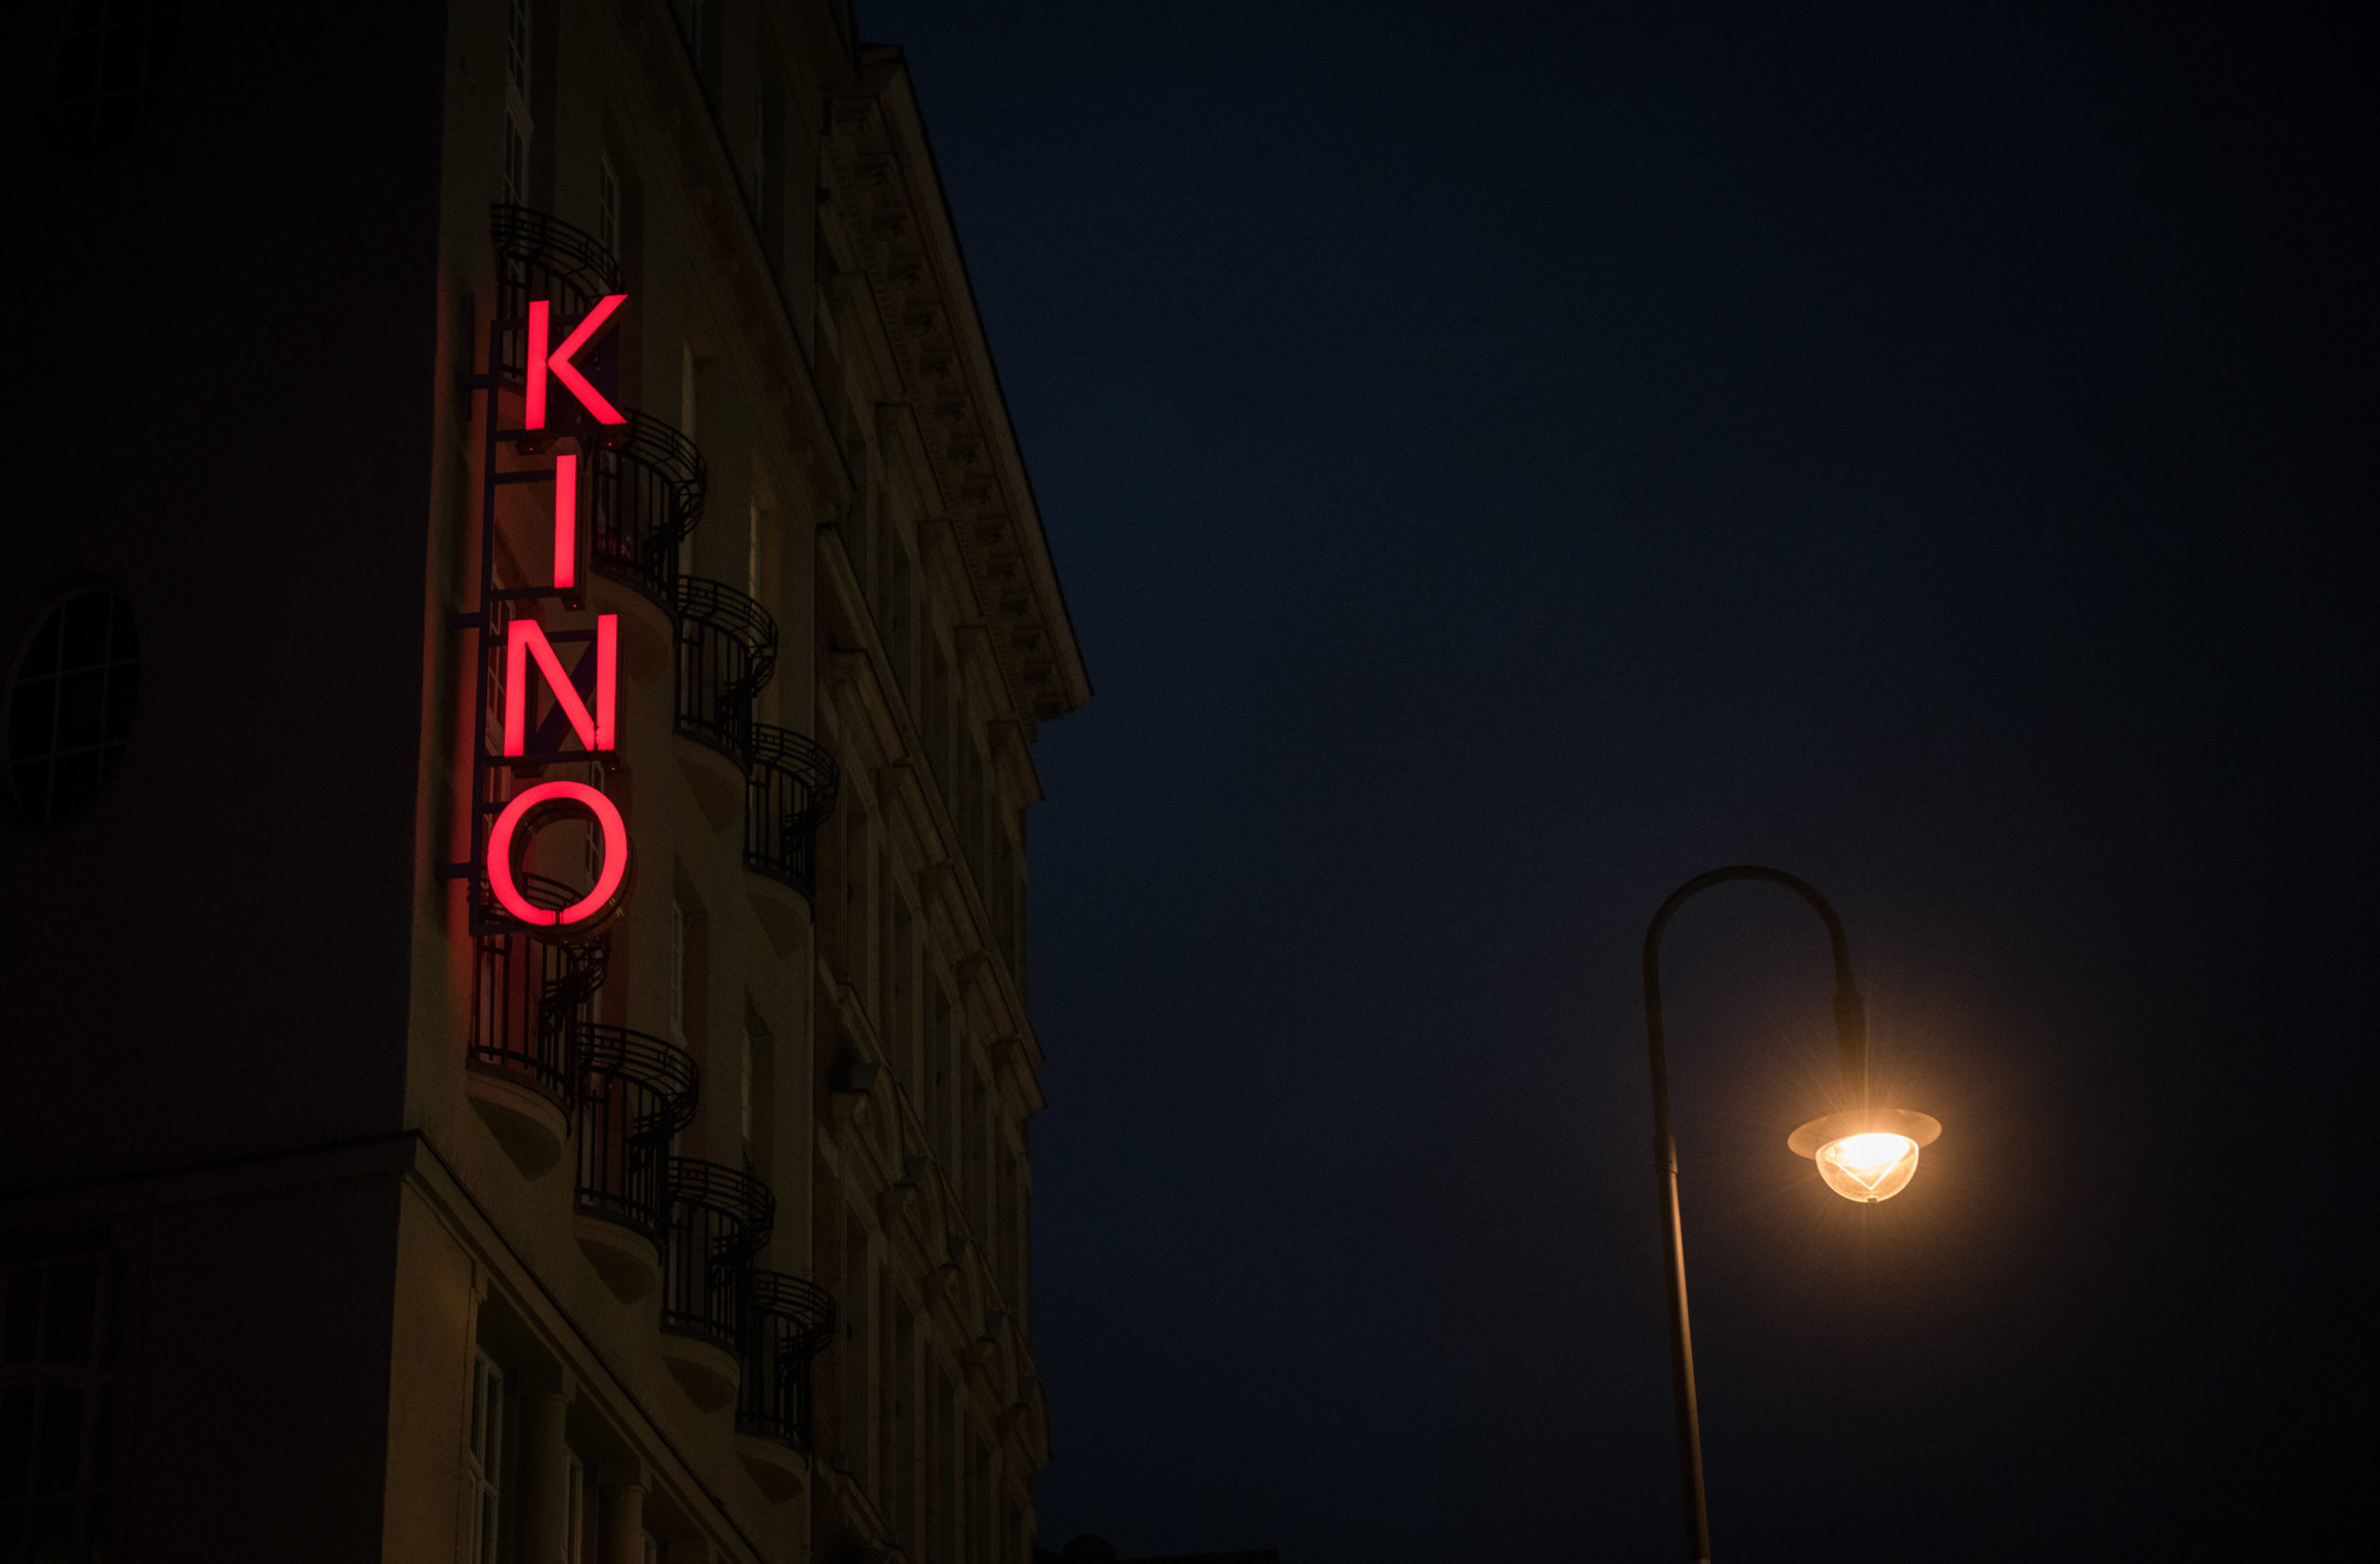 Der Schriftzug "Kino" an einer Hausfassade in Neukölln. Foto: Imago/Bildgehege